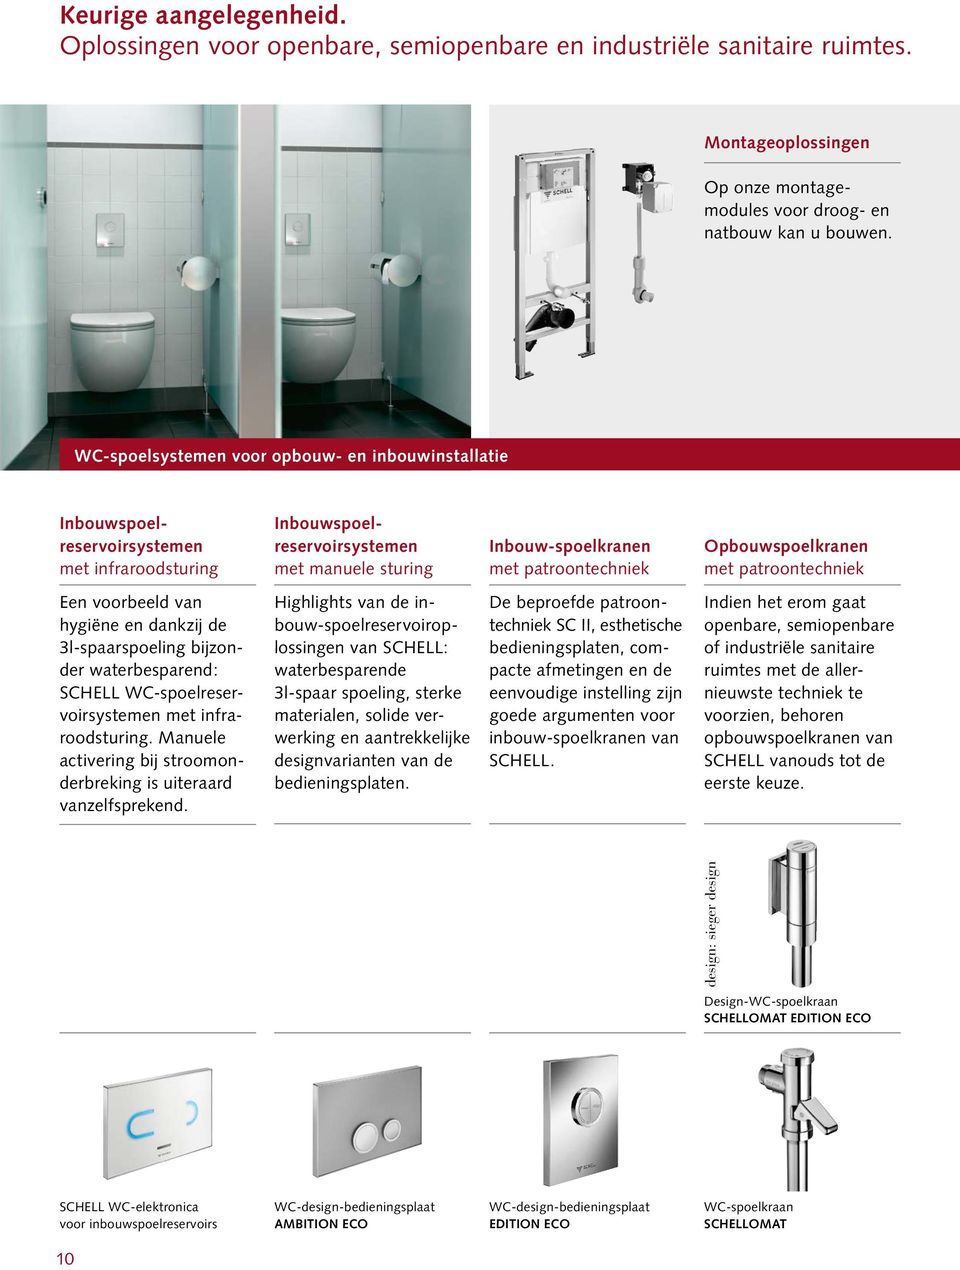 Opbouwspoelkranen met patroontechniek Een voorbeeld van hygiëne en dankzij de 3l-spaarspoeling bijzonder waterbesparend: SCHELL WC-spoelreservoirsystemen met infraroodsturing.